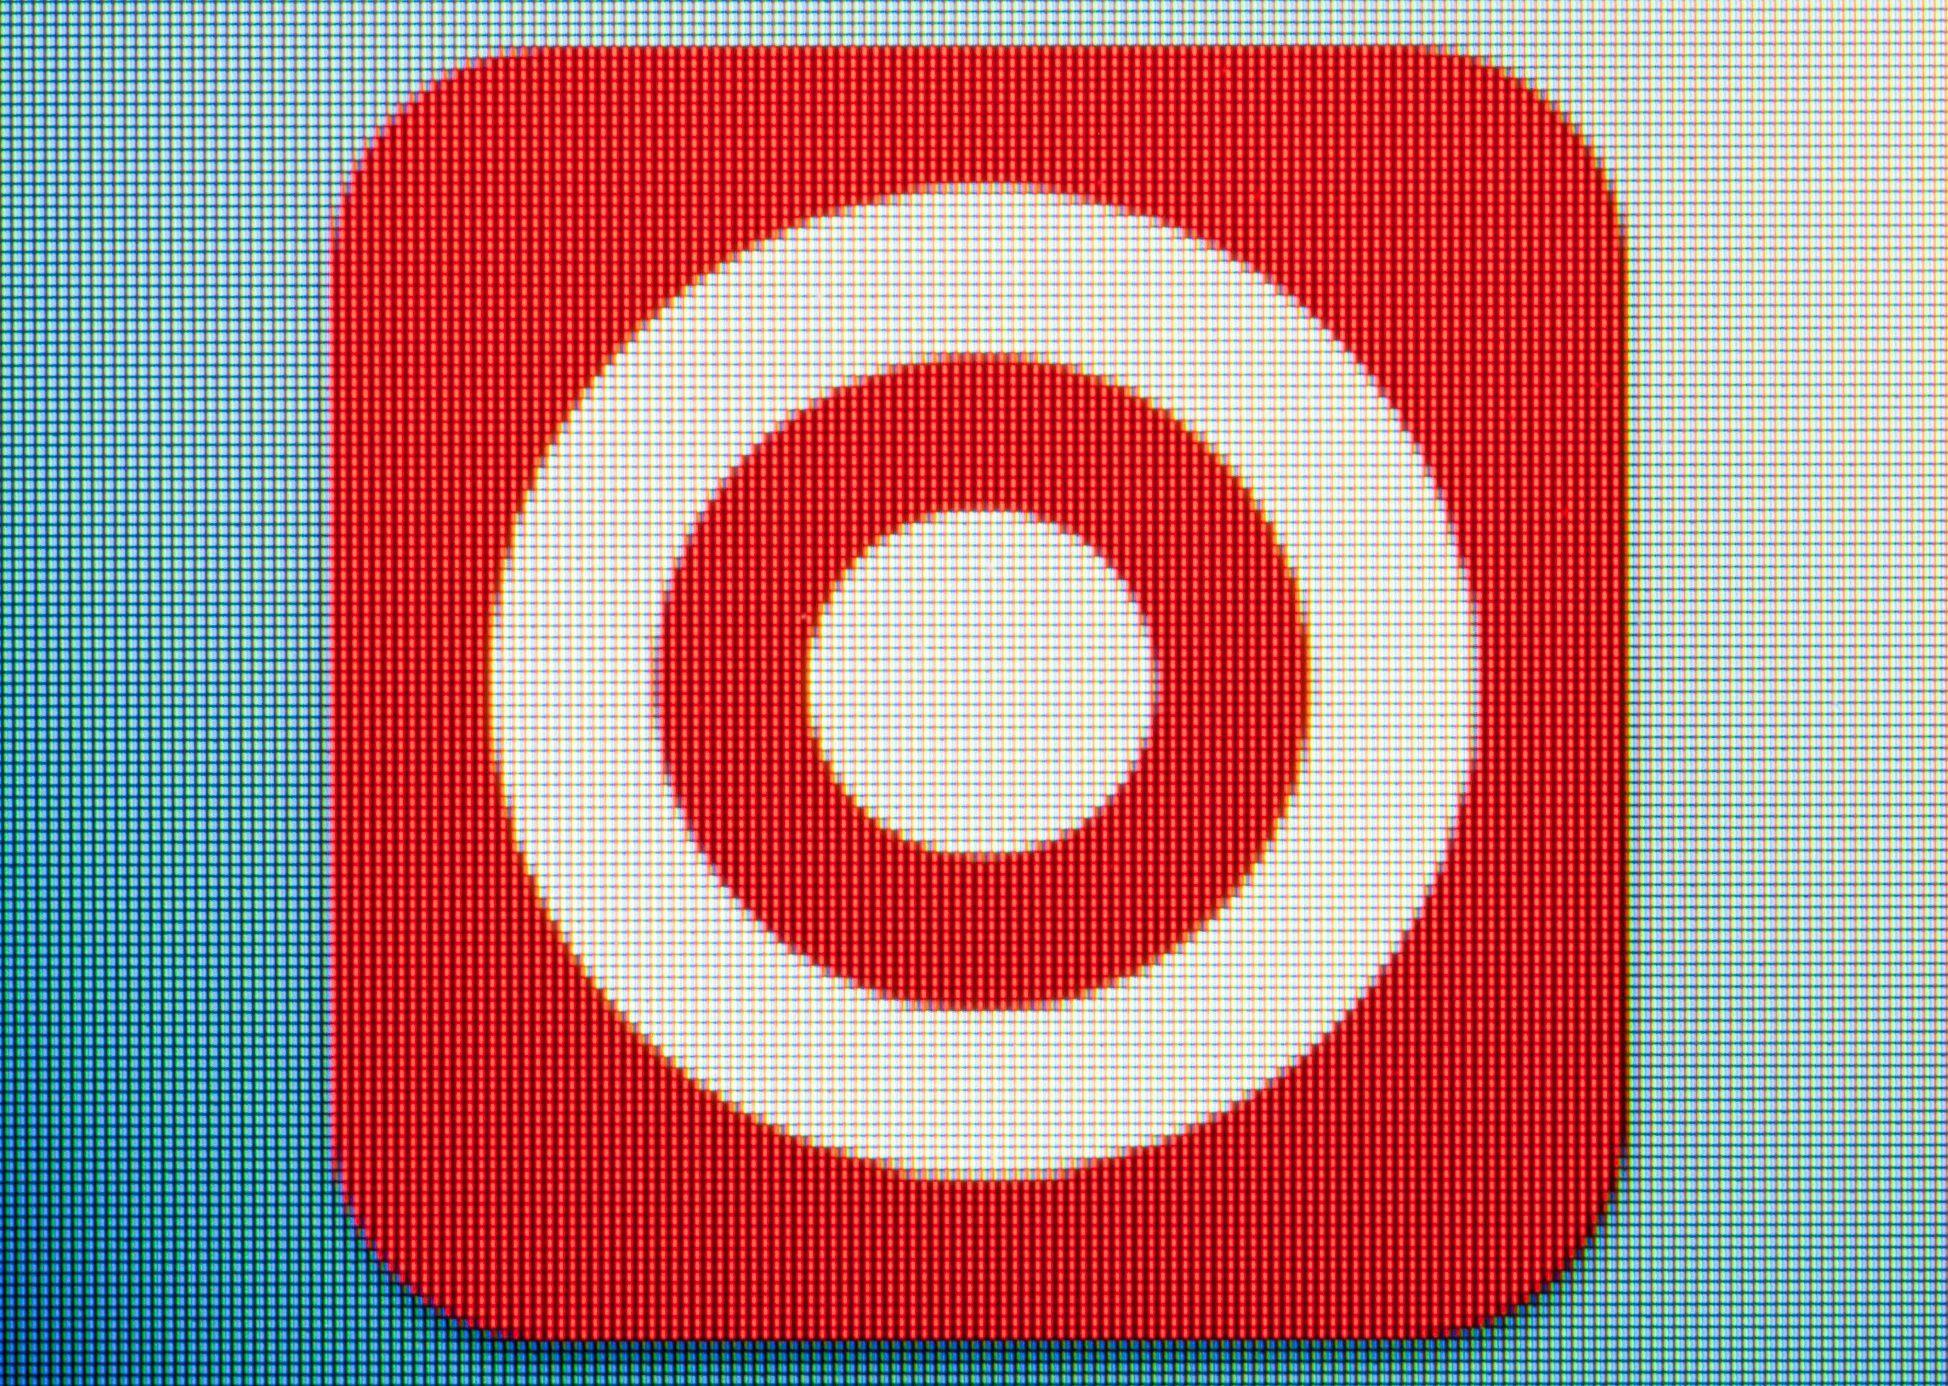 Google Shopping App Logo - 10 Popular Online Mobile Shopping Apps